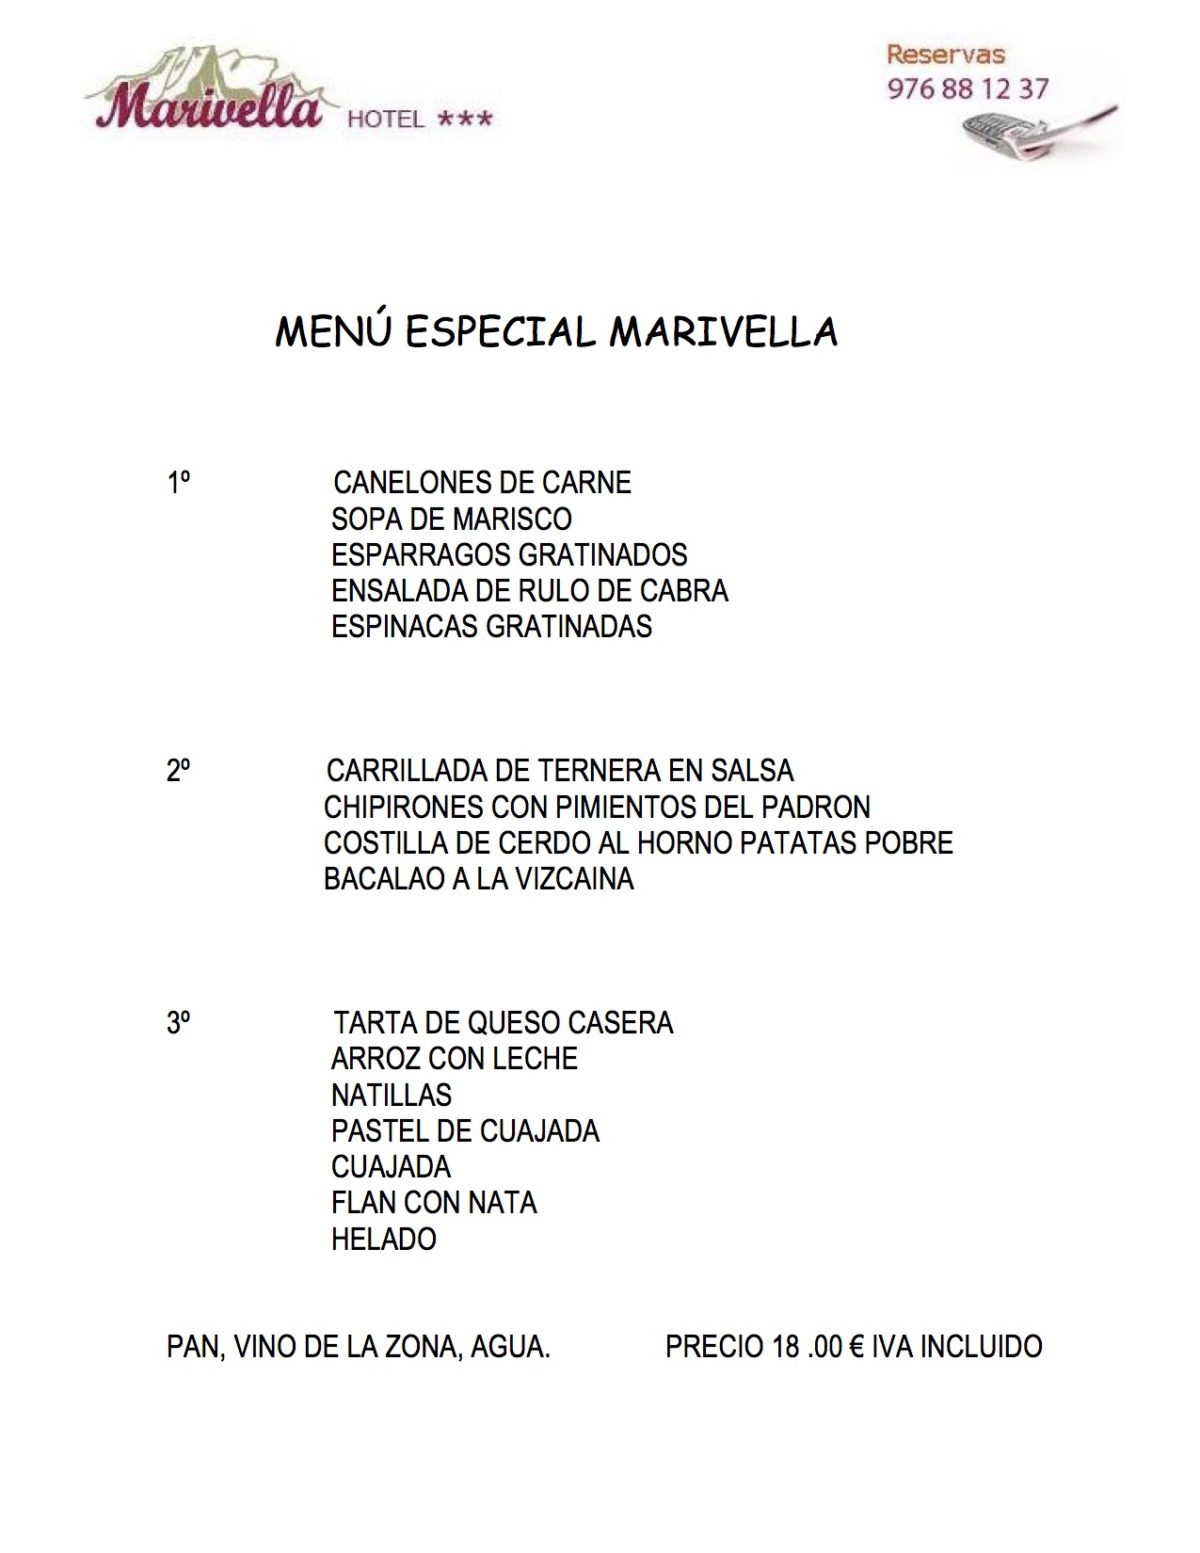 MENU-ESPECIAL-MARIVELLA-SOPA-DE-MARISCO-050118-1200x1553.jpg